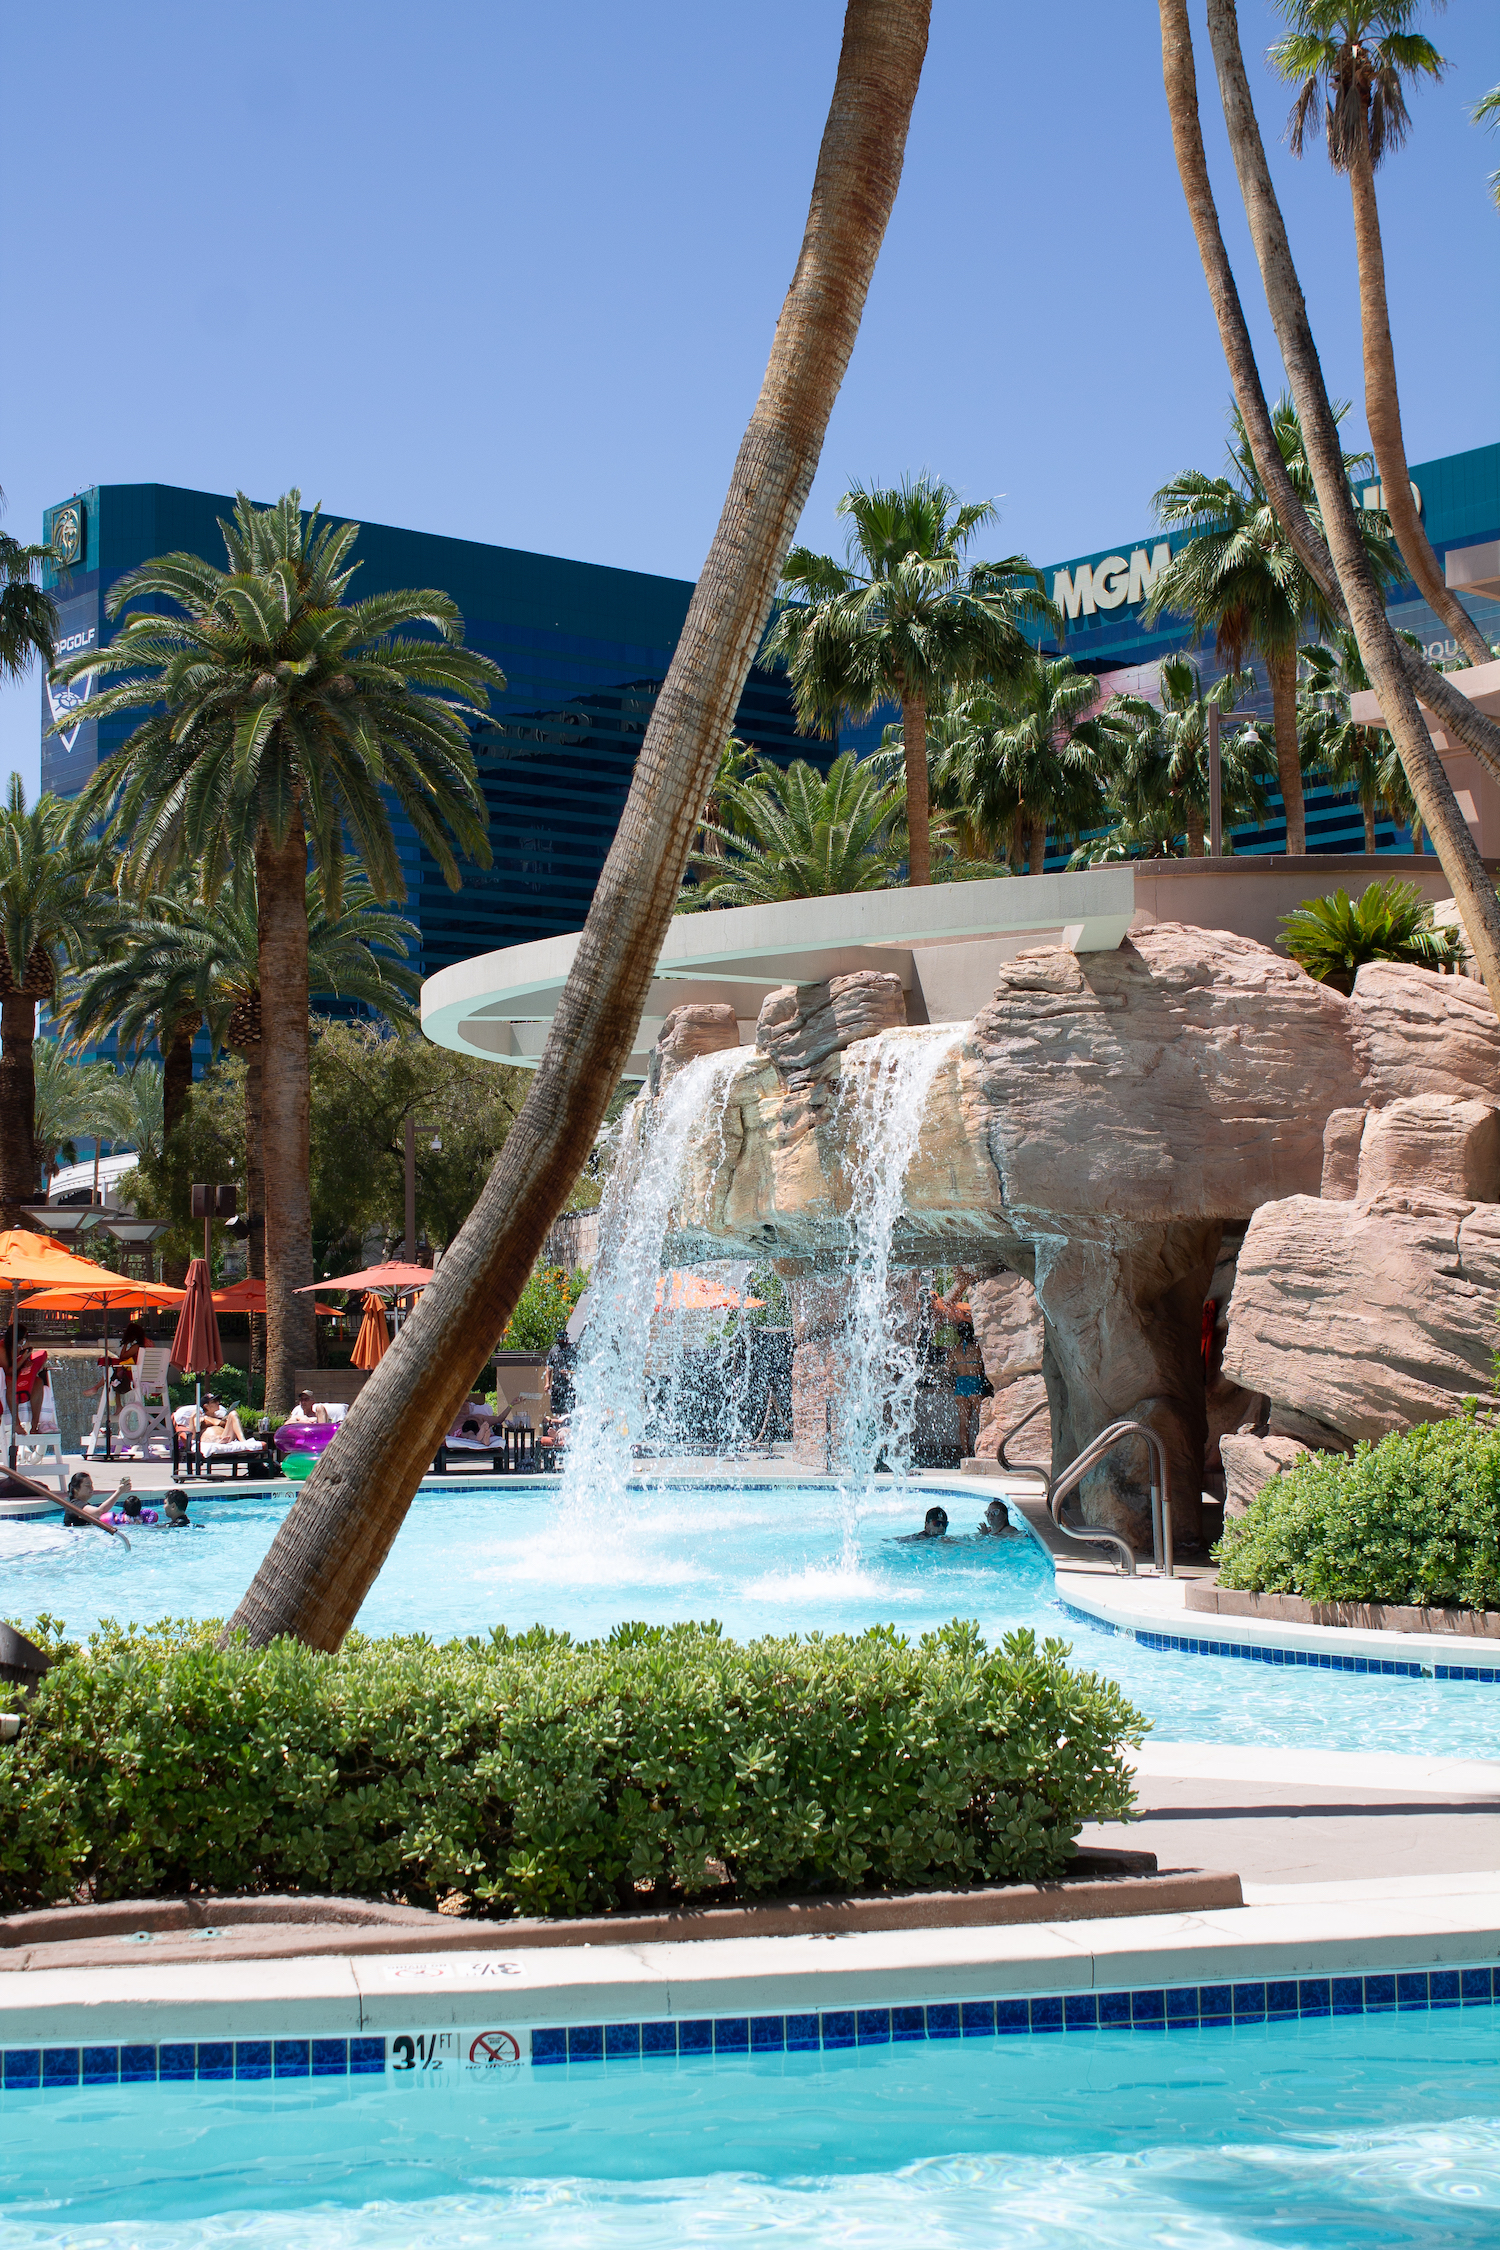 MGM Grand Hotel Pool